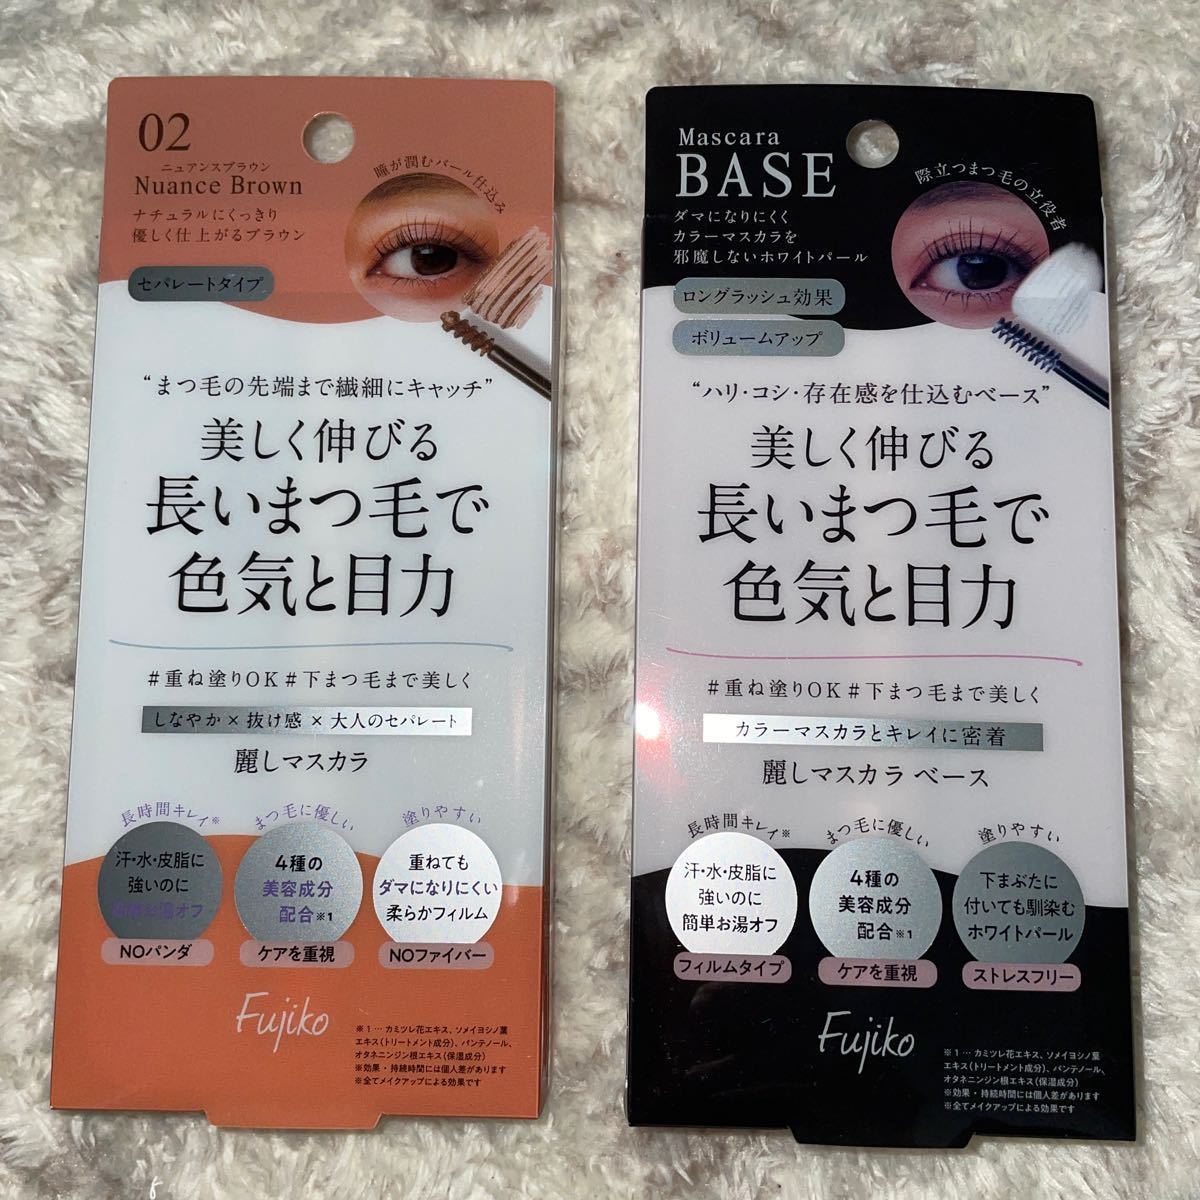 [ new goods ]2 point together Fujiko 02 Fuji ko beauty . mascara natural Brown & beauty . mascara base 